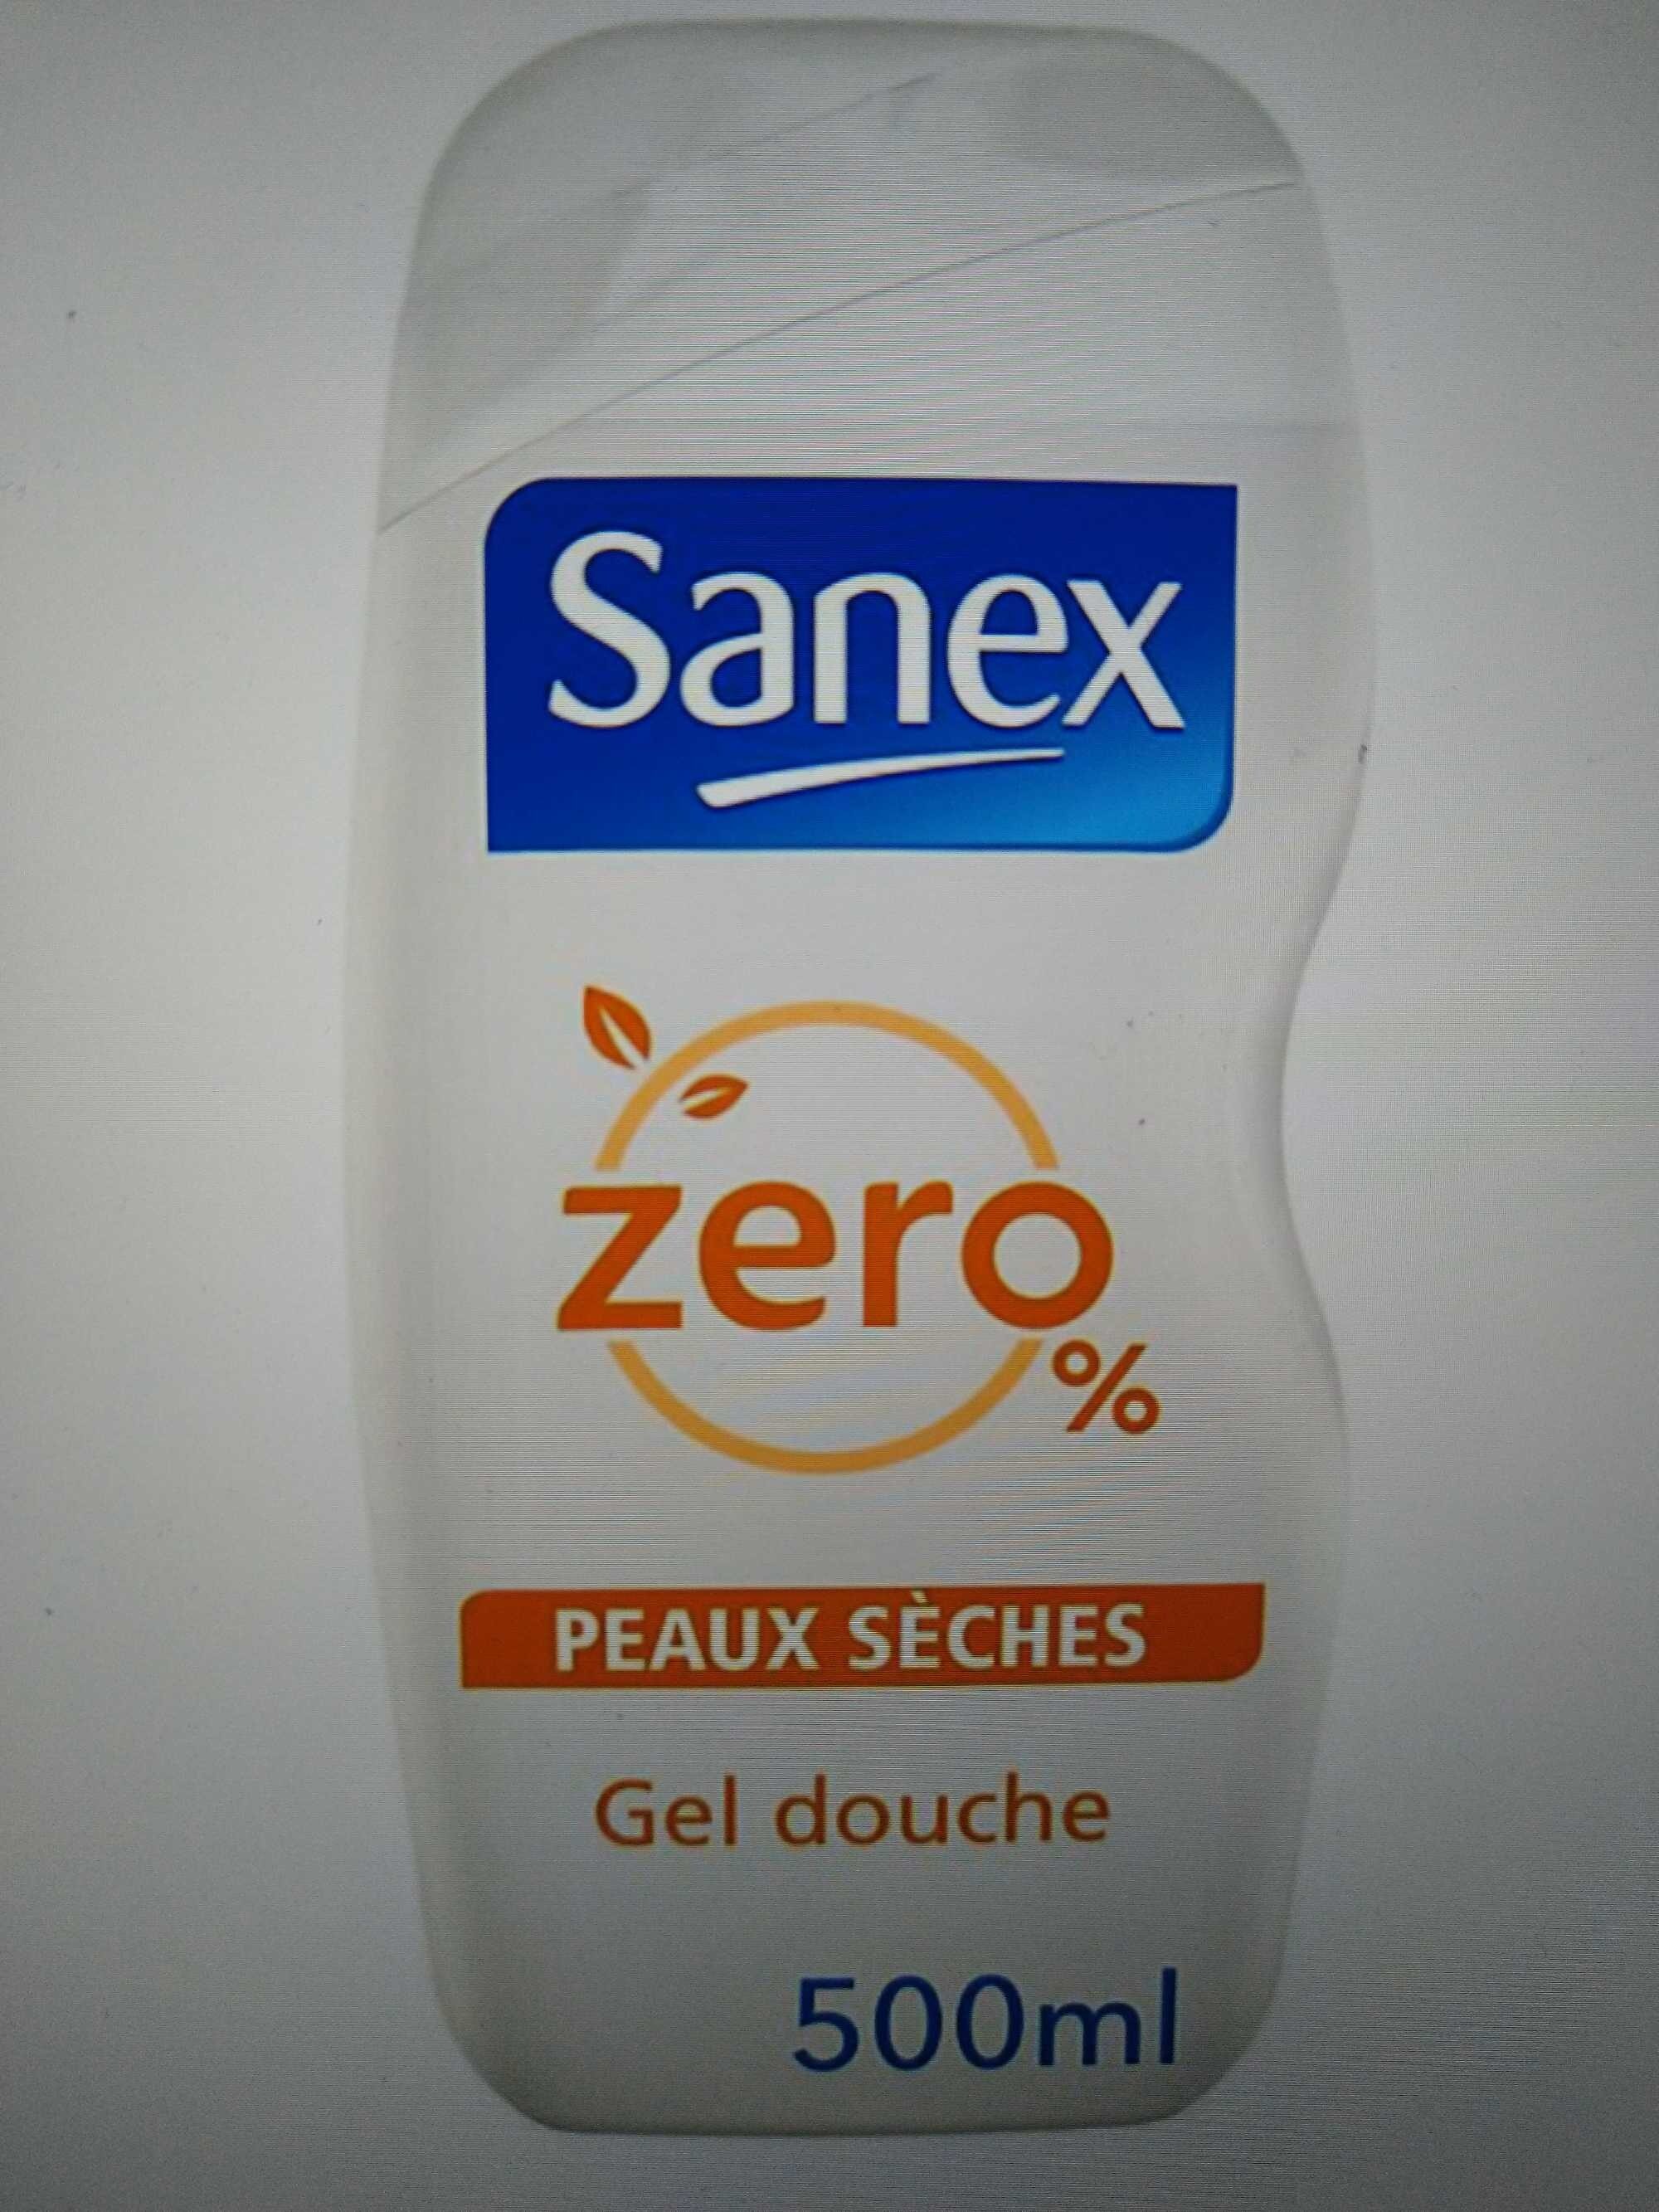 Zero 0% Gel douche Peaux sèches - Produit - fr